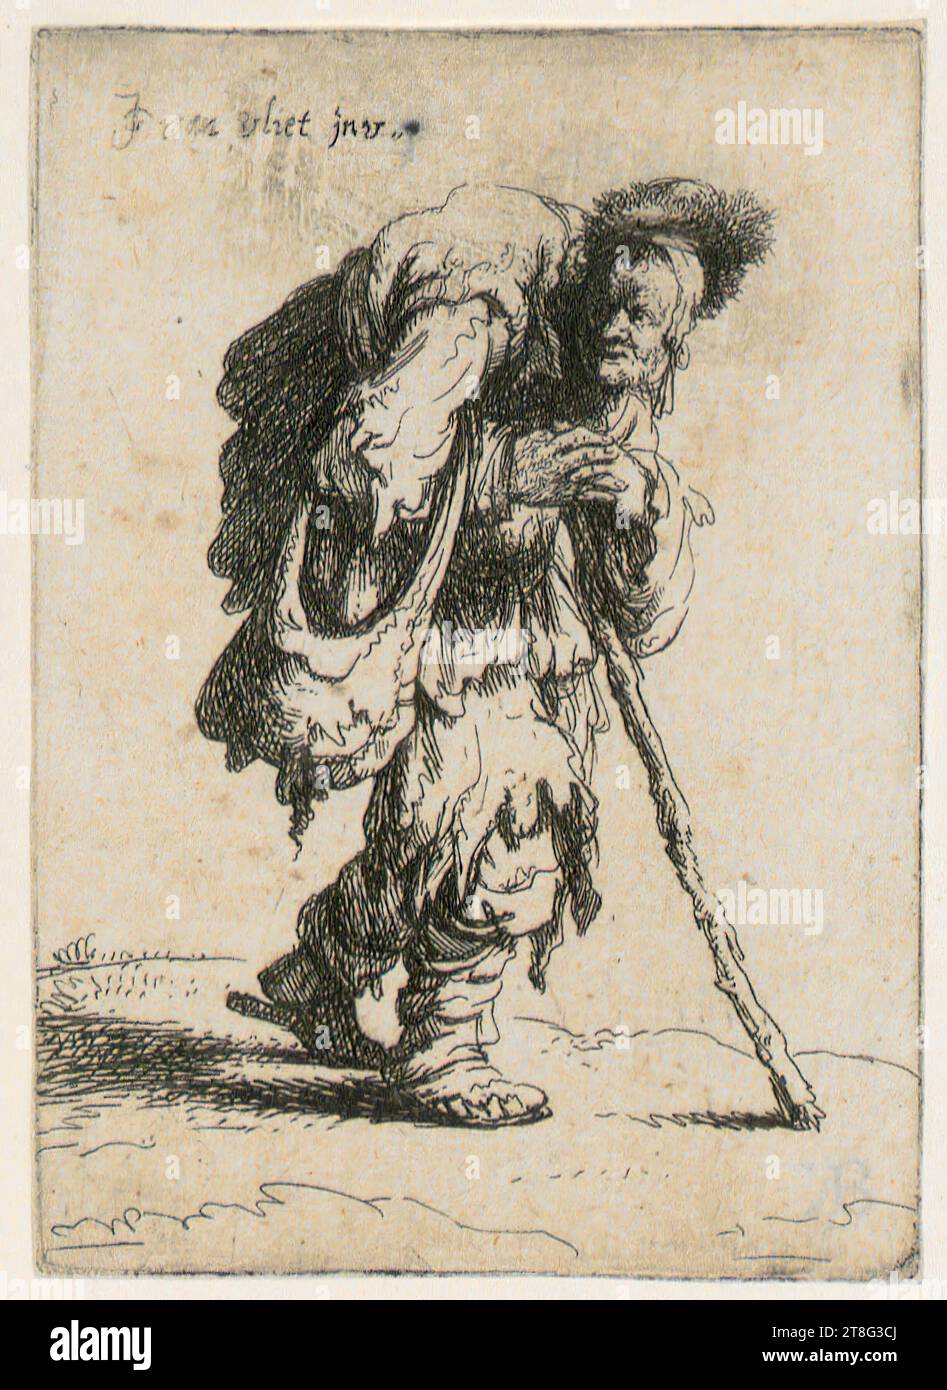 Johannes van Vliet (1628 - 1637 mentionné autour), mendiant bosselé, feuille 3 de la série 'mendiants', origine du support d'impression : 1632, gravure et gravure sur cuivre, taille de la feuille : 9,4 x 6,6 cm, en haut à gauche signée 'JG van vliet jnu Banque D'Images